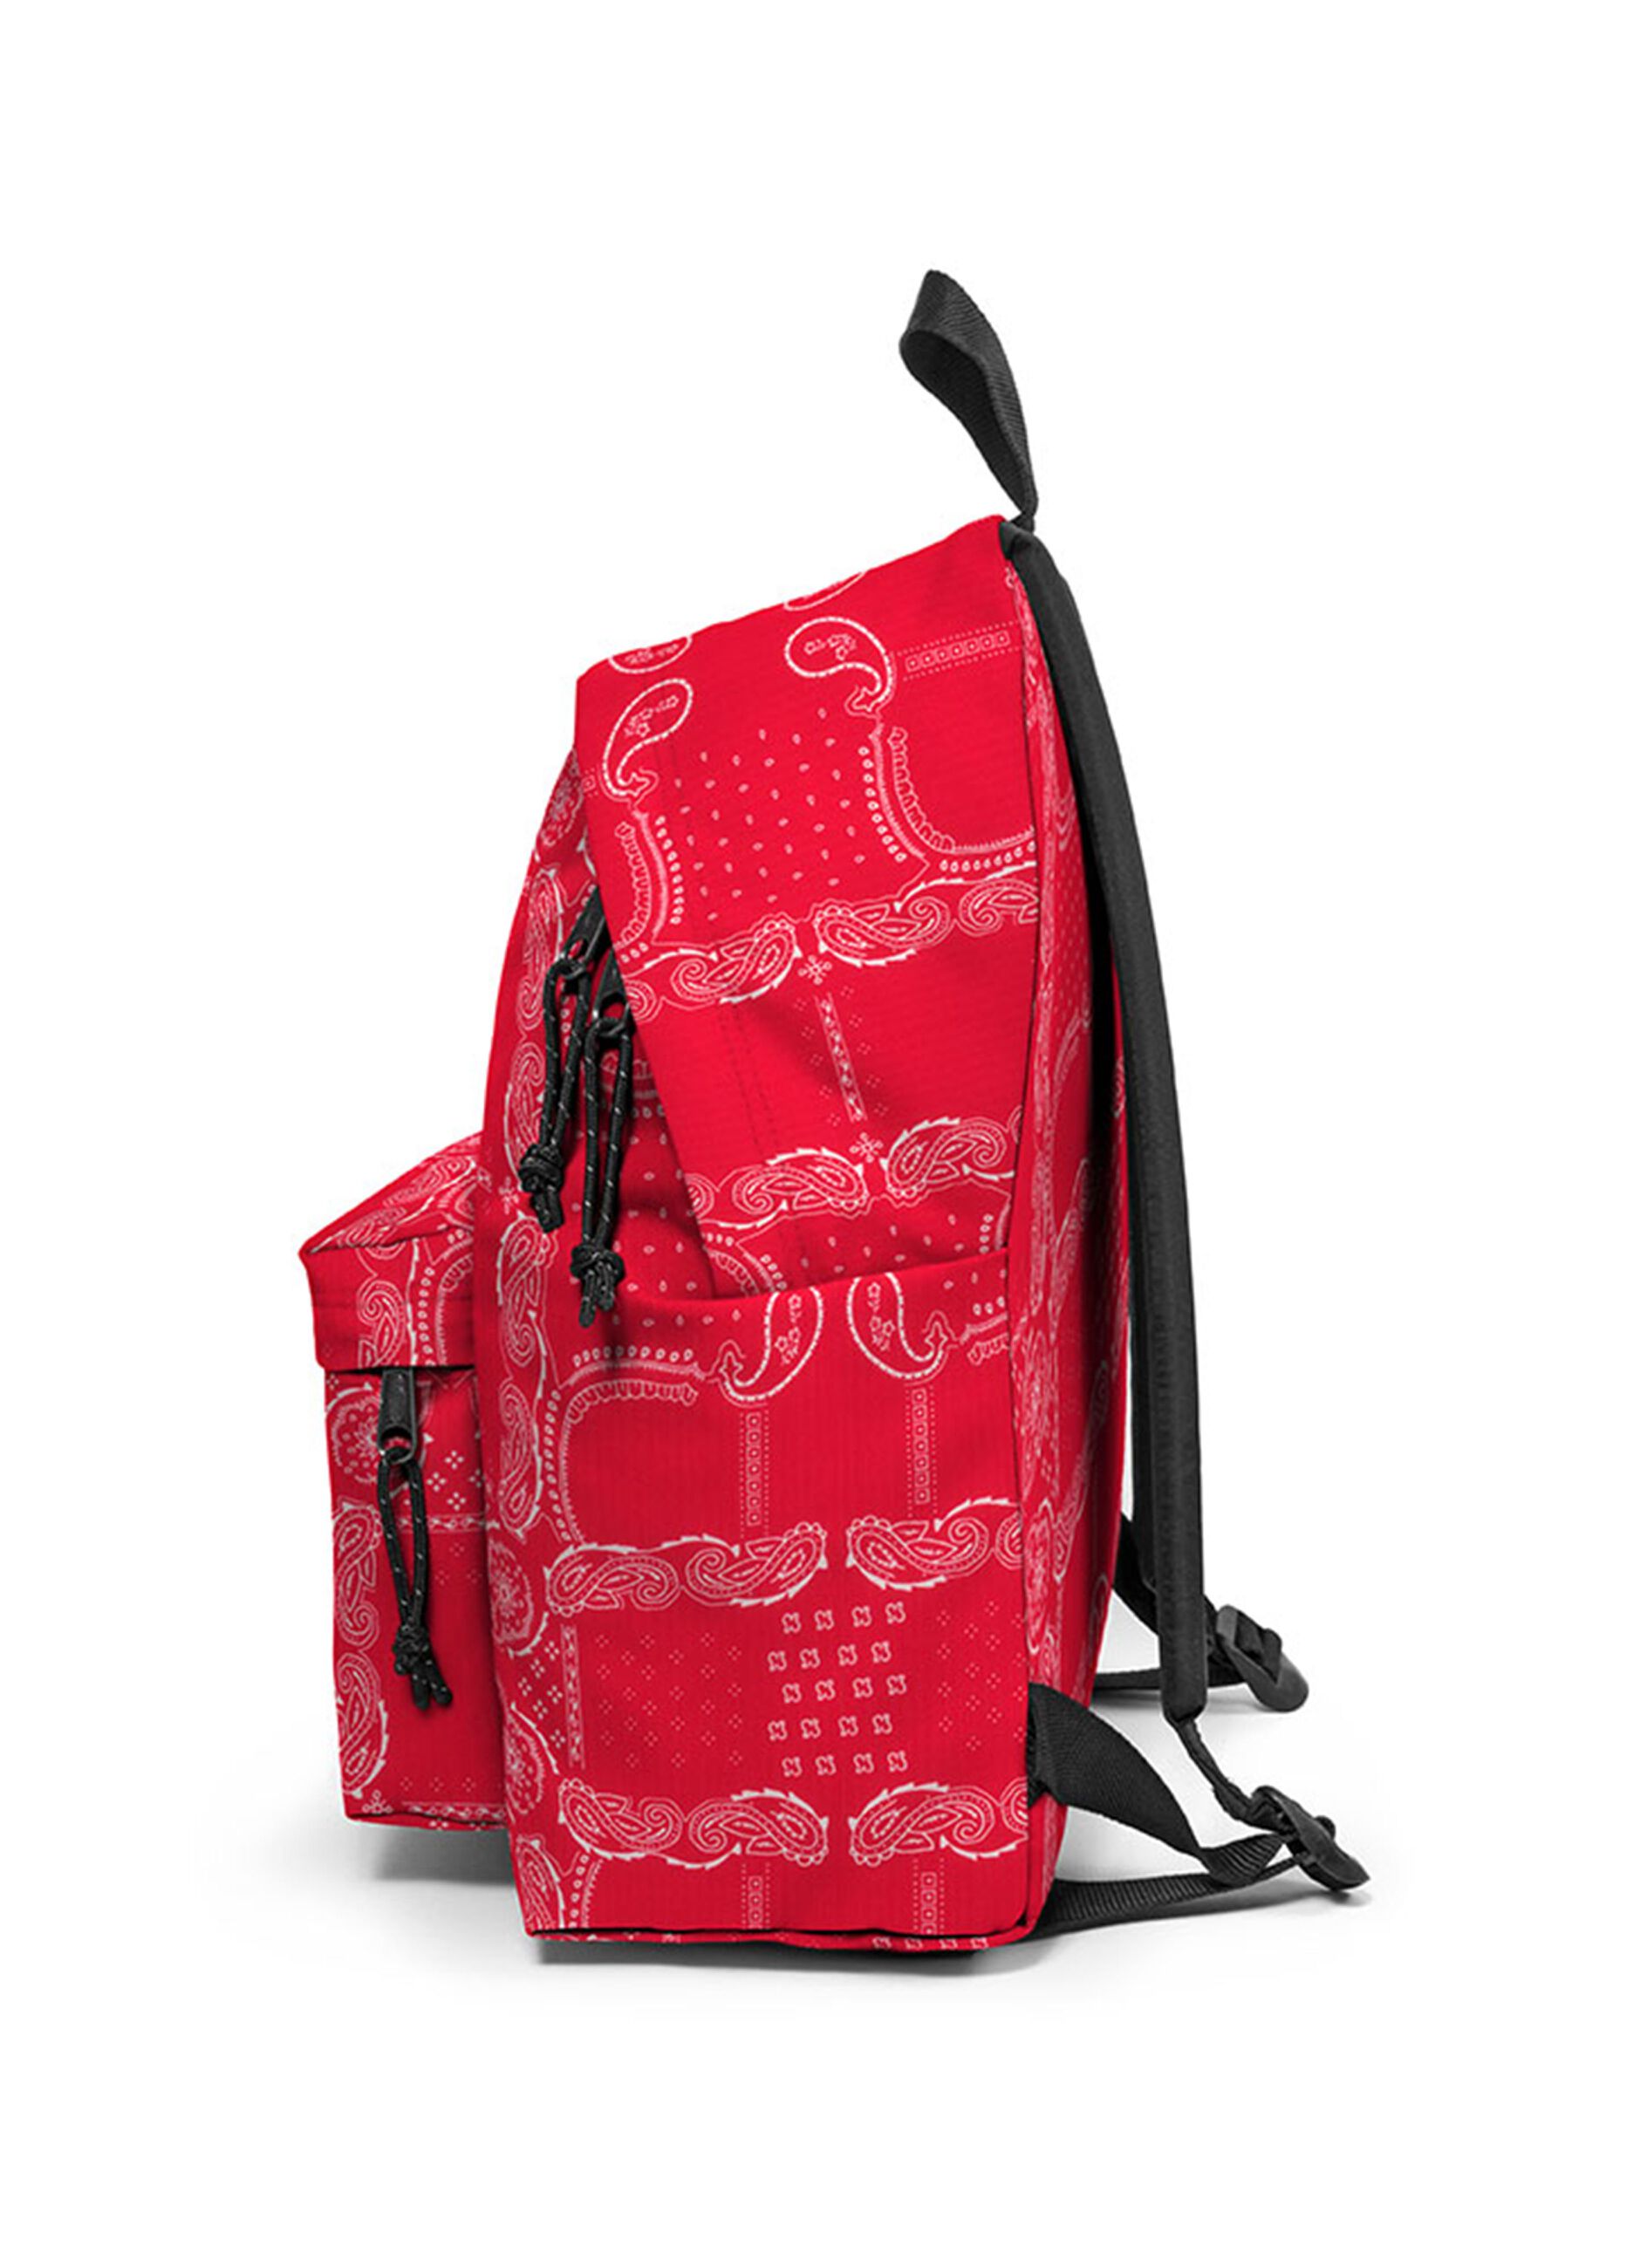 Eastpak Padded Pak'R® backpack